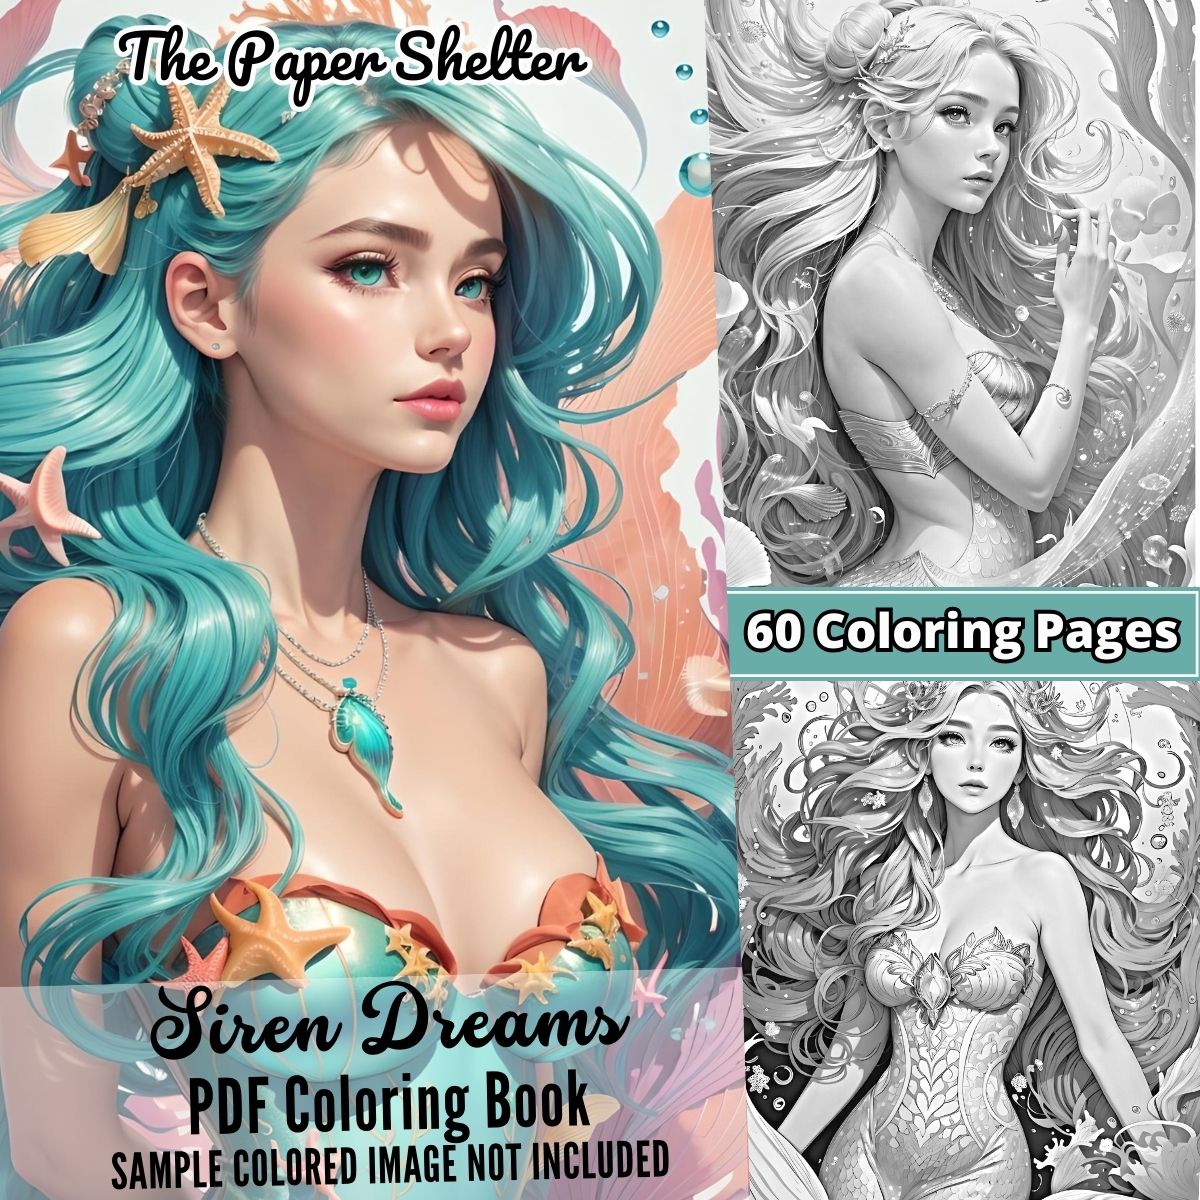 Sirens Dreams - Digital Coloring Book